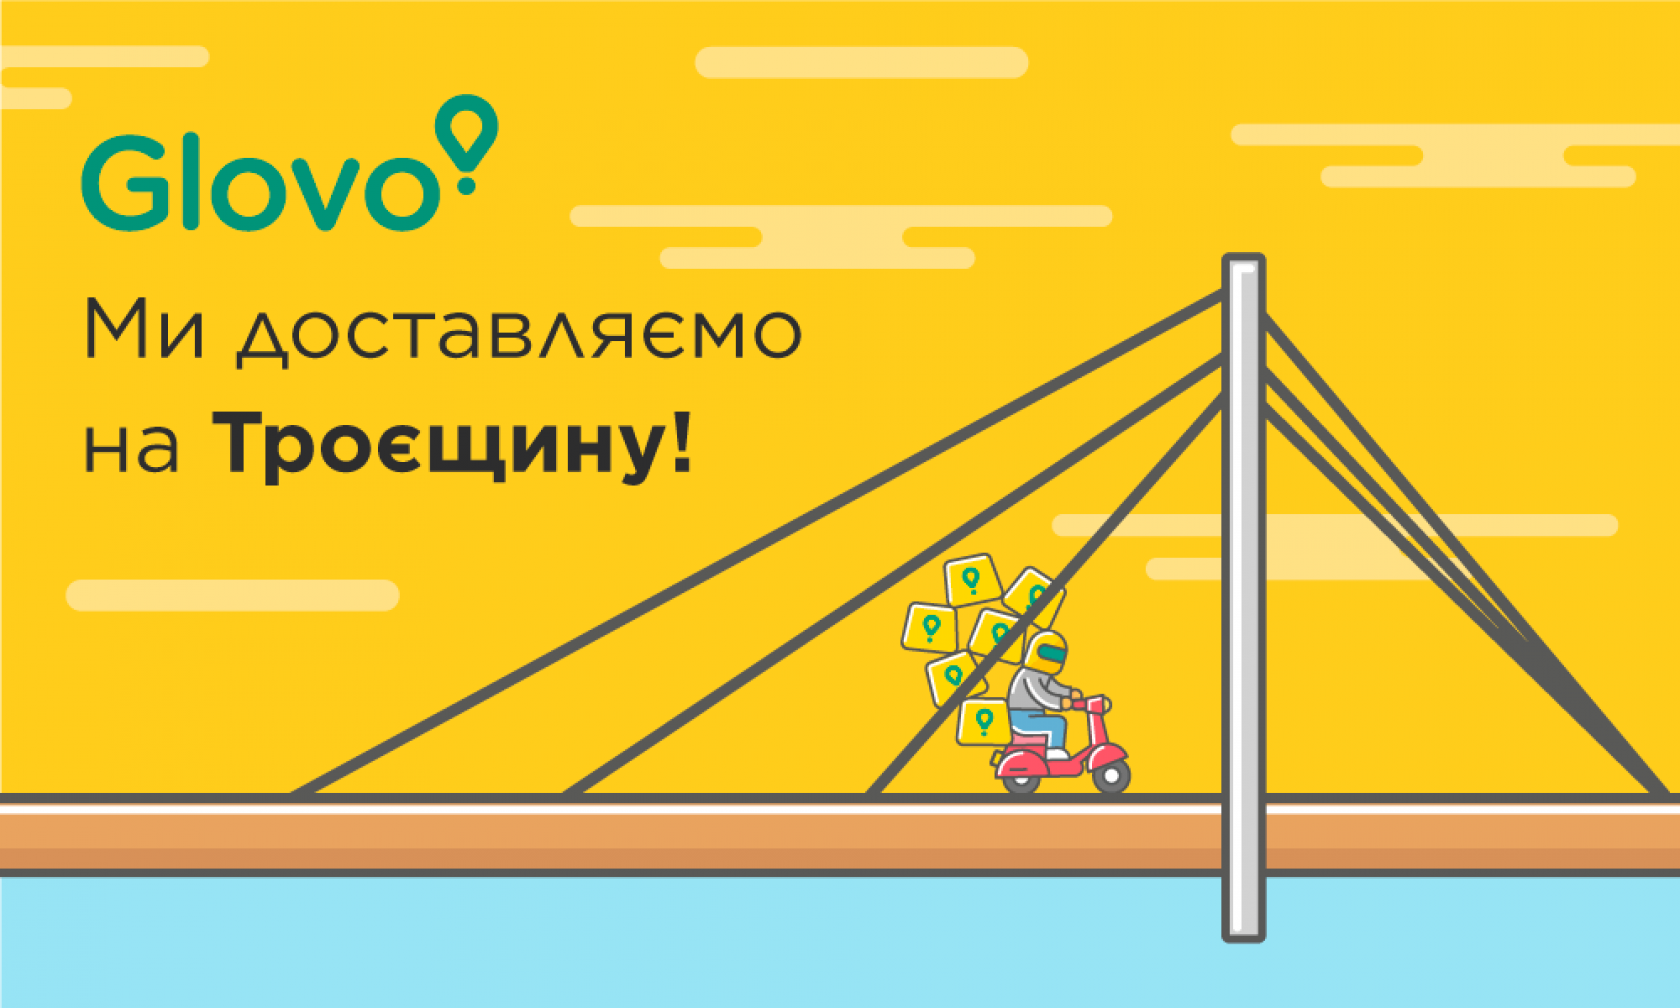 Glovo сповіщає клієнтів про старт робіт у районі лівобережного Києва